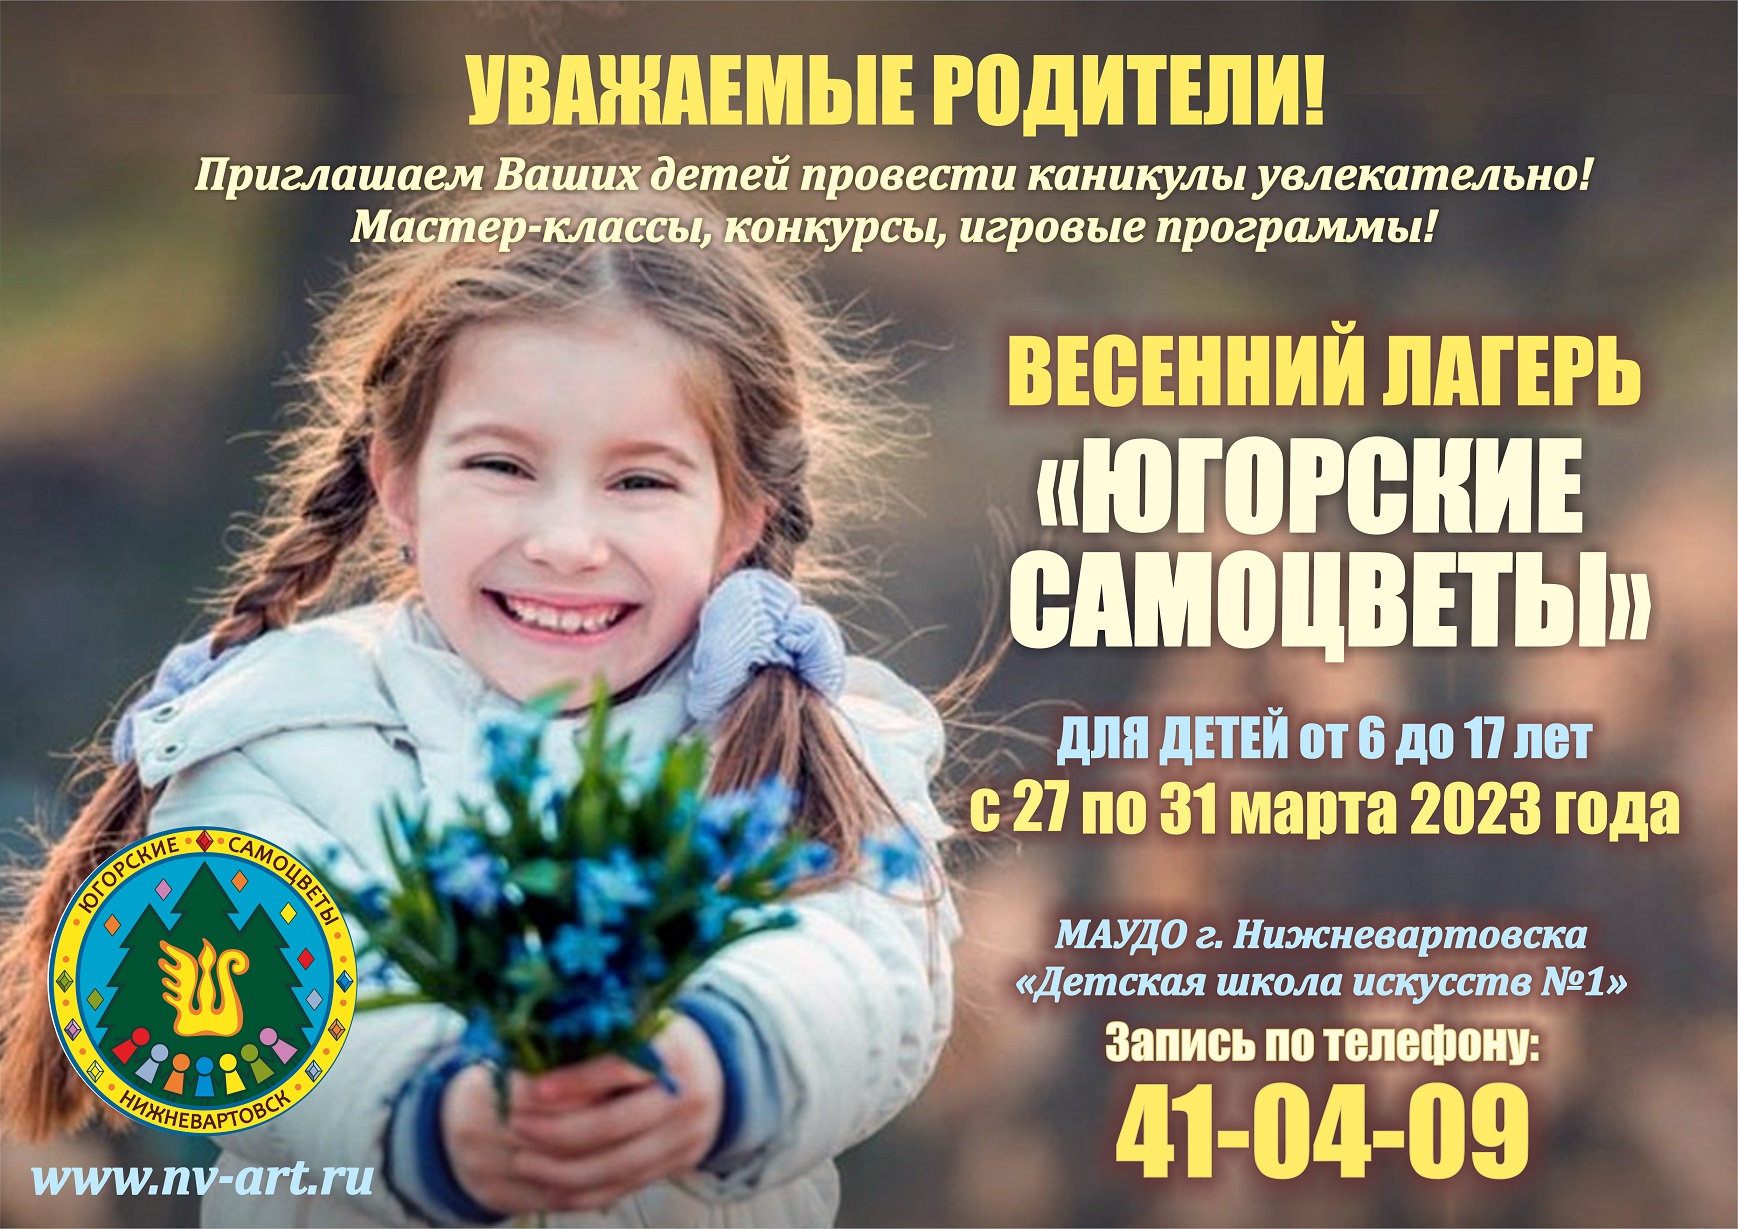 Плакат весенней смены лагеря "Югорские самоцветы"